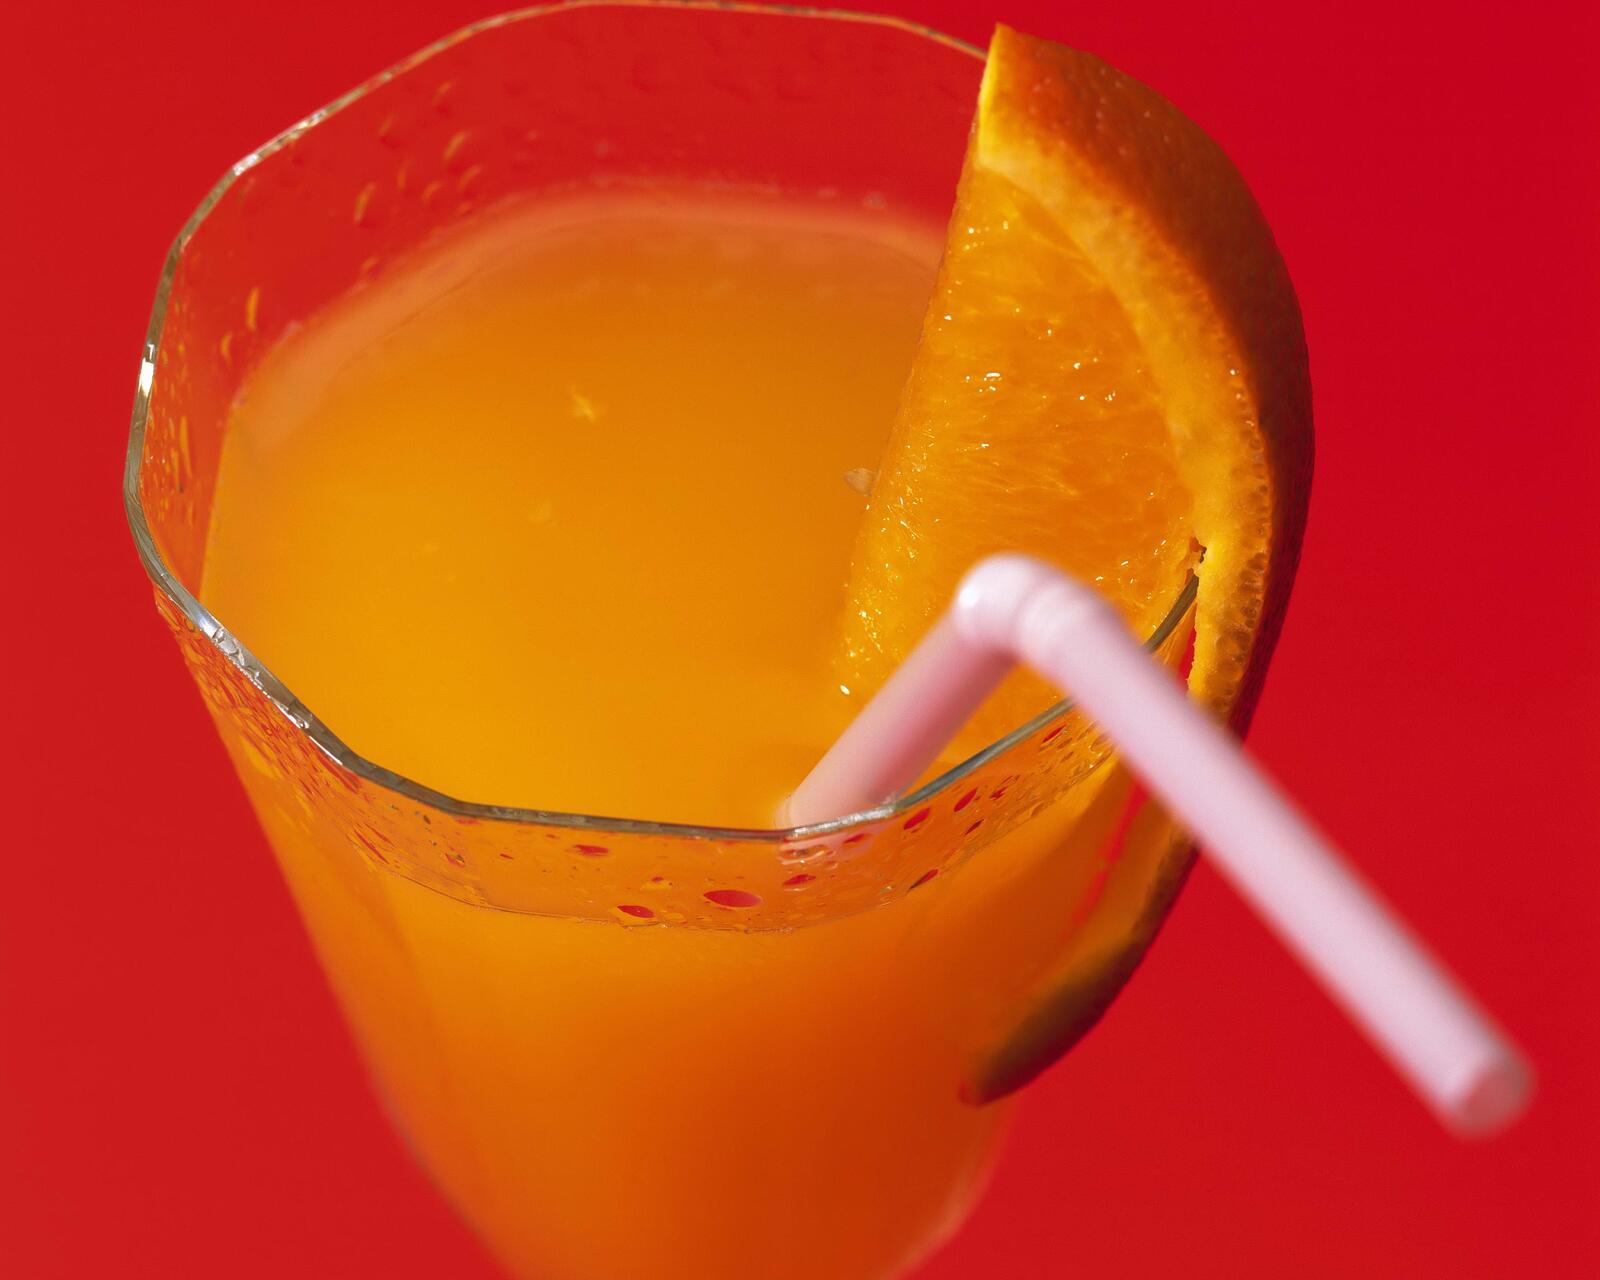 Free photo Orange juice with a straw